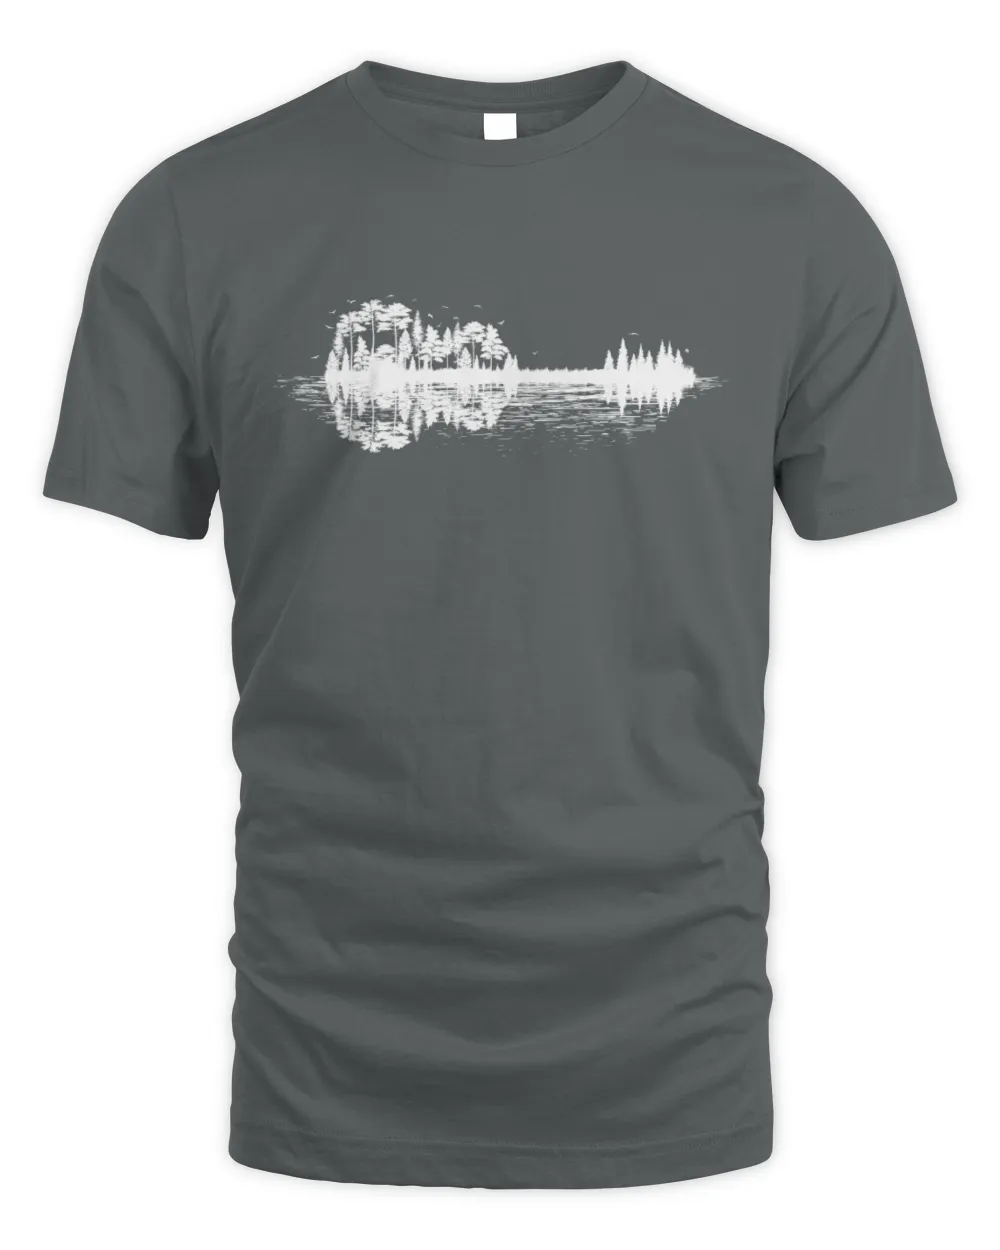 Nature Guitar T-shirt, Musician Music Lover, Band Tee Shirt, Country Music Guitarist Gift Tee Shirt